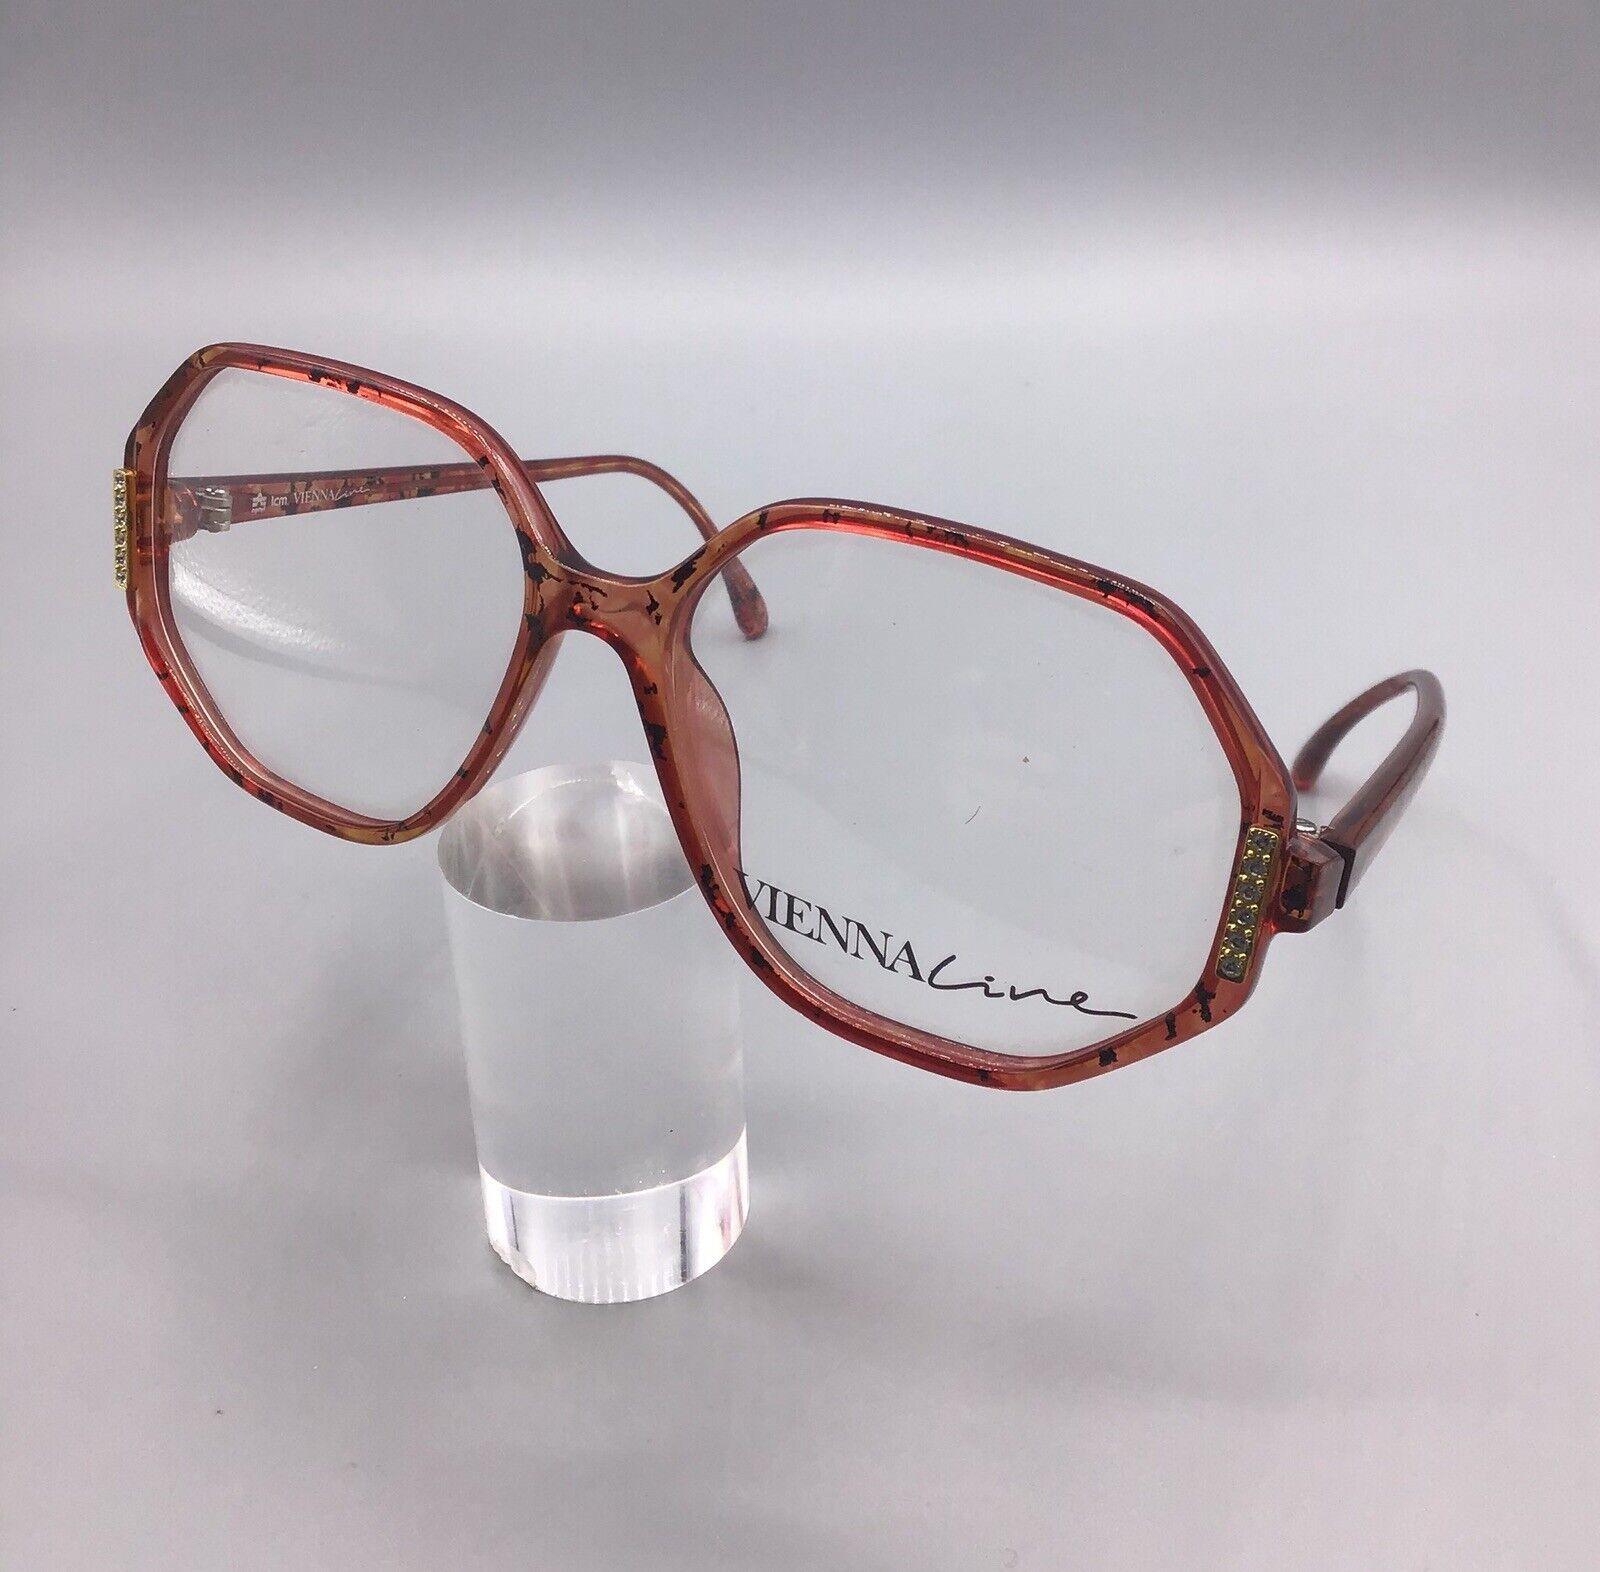 Viennaline occhiale vintage Eyewear frame 1581 31 brillen lunettes